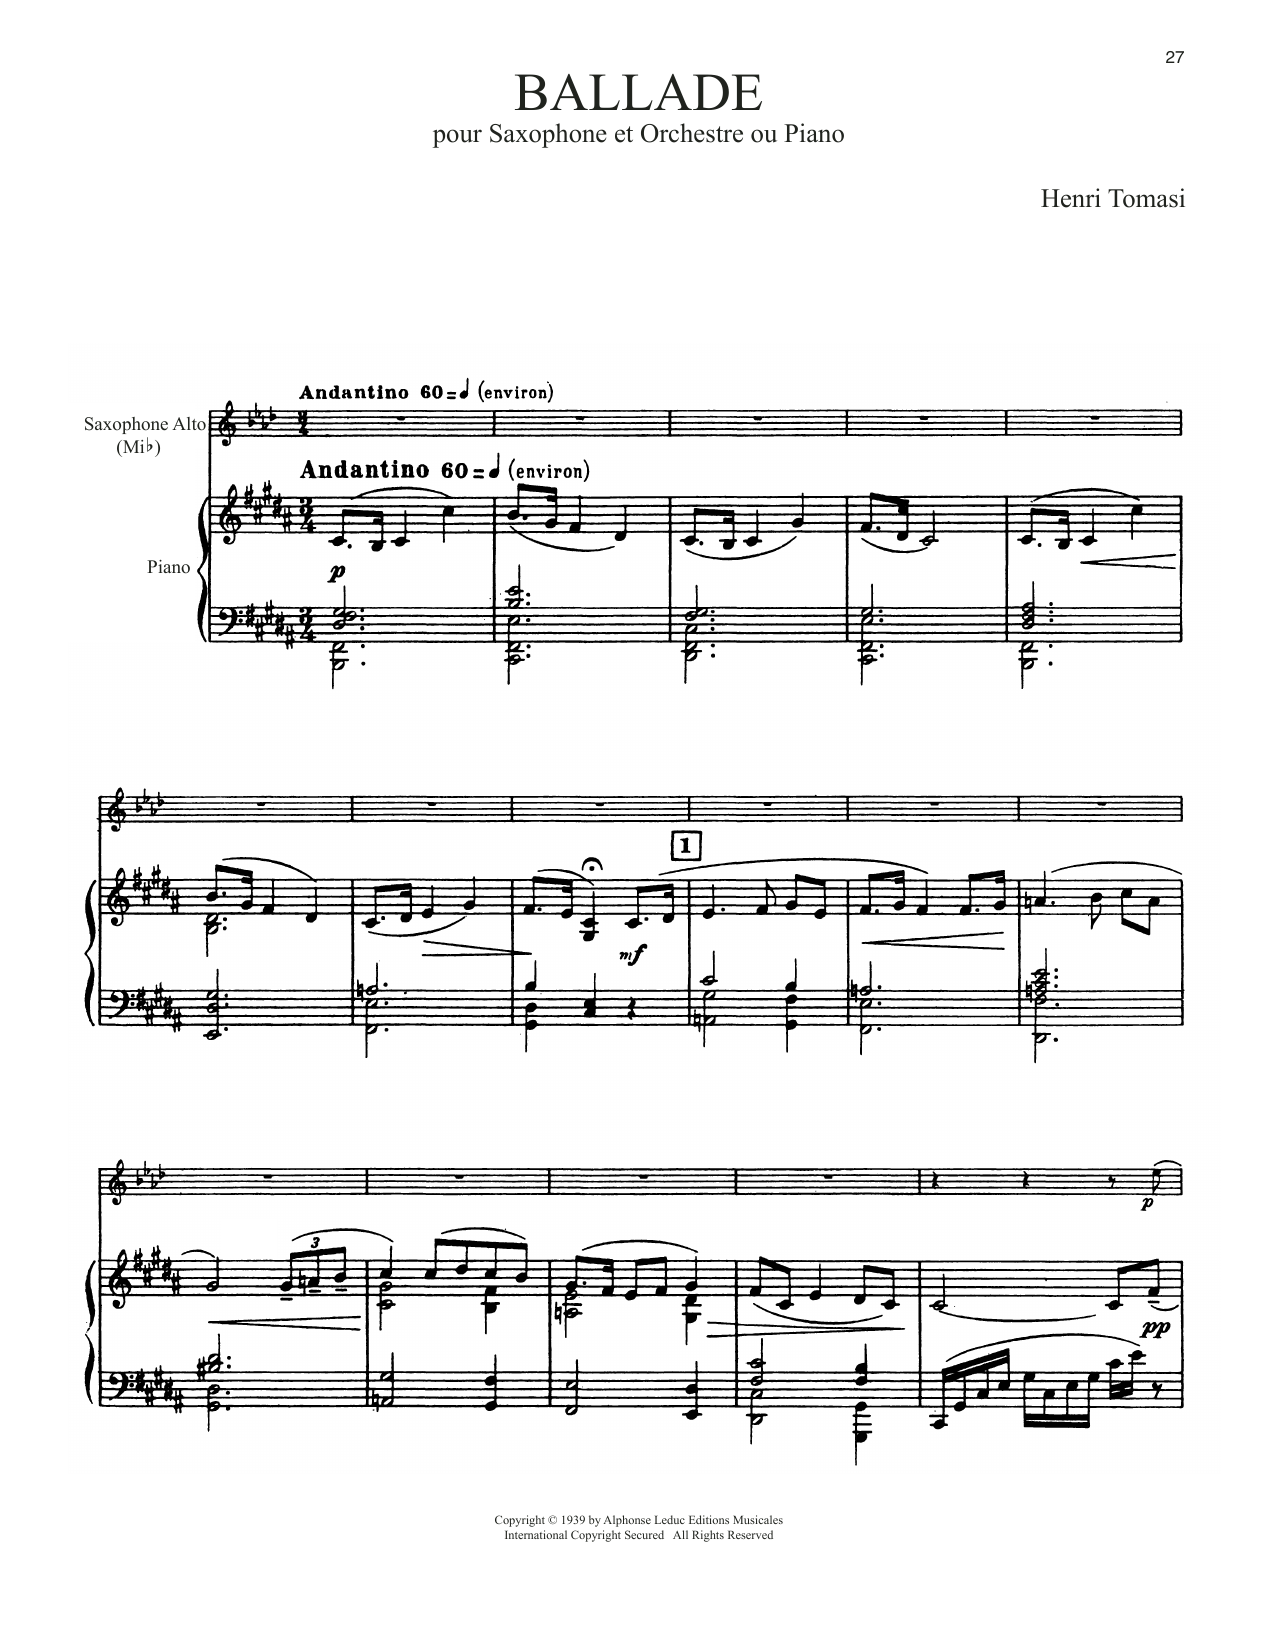 Henri Tomasi Ballade sheet music notes printable PDF score